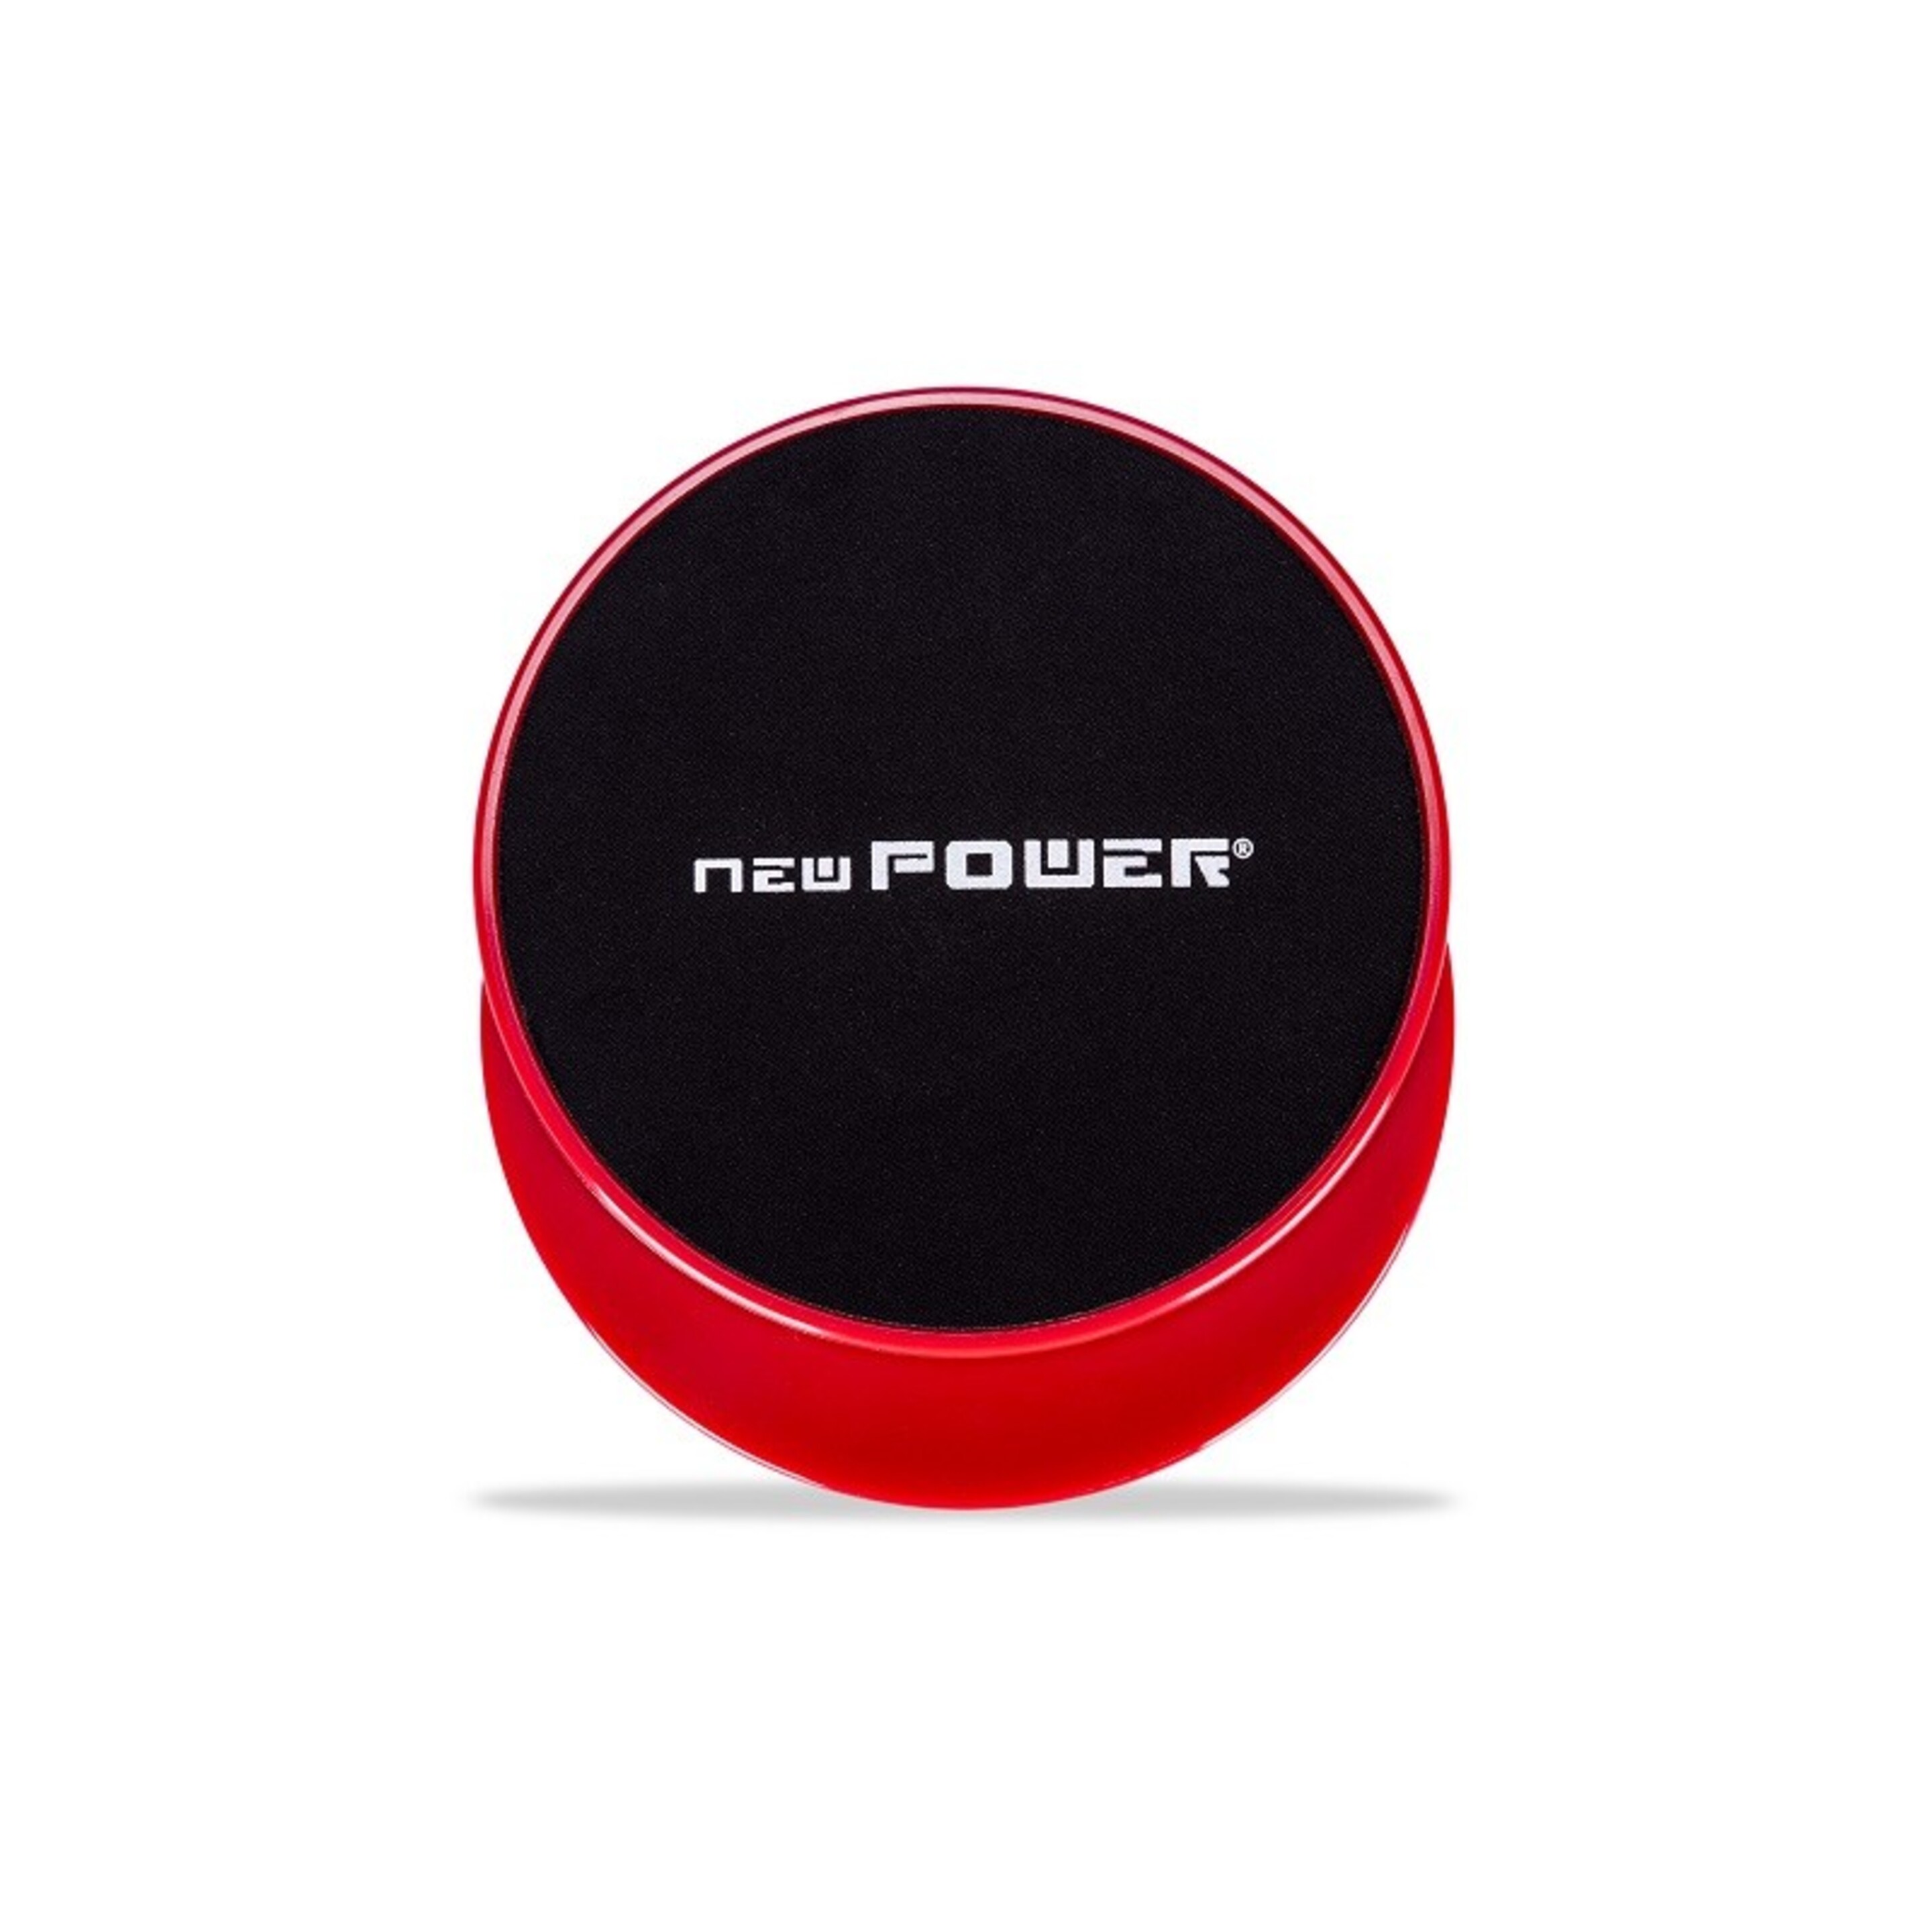 Newpower-discos Deslizantes Fitness Con Doble Cara(ø18cm) Para Mejorar Coordinación Y Equilibrio. - negro-rojo - 